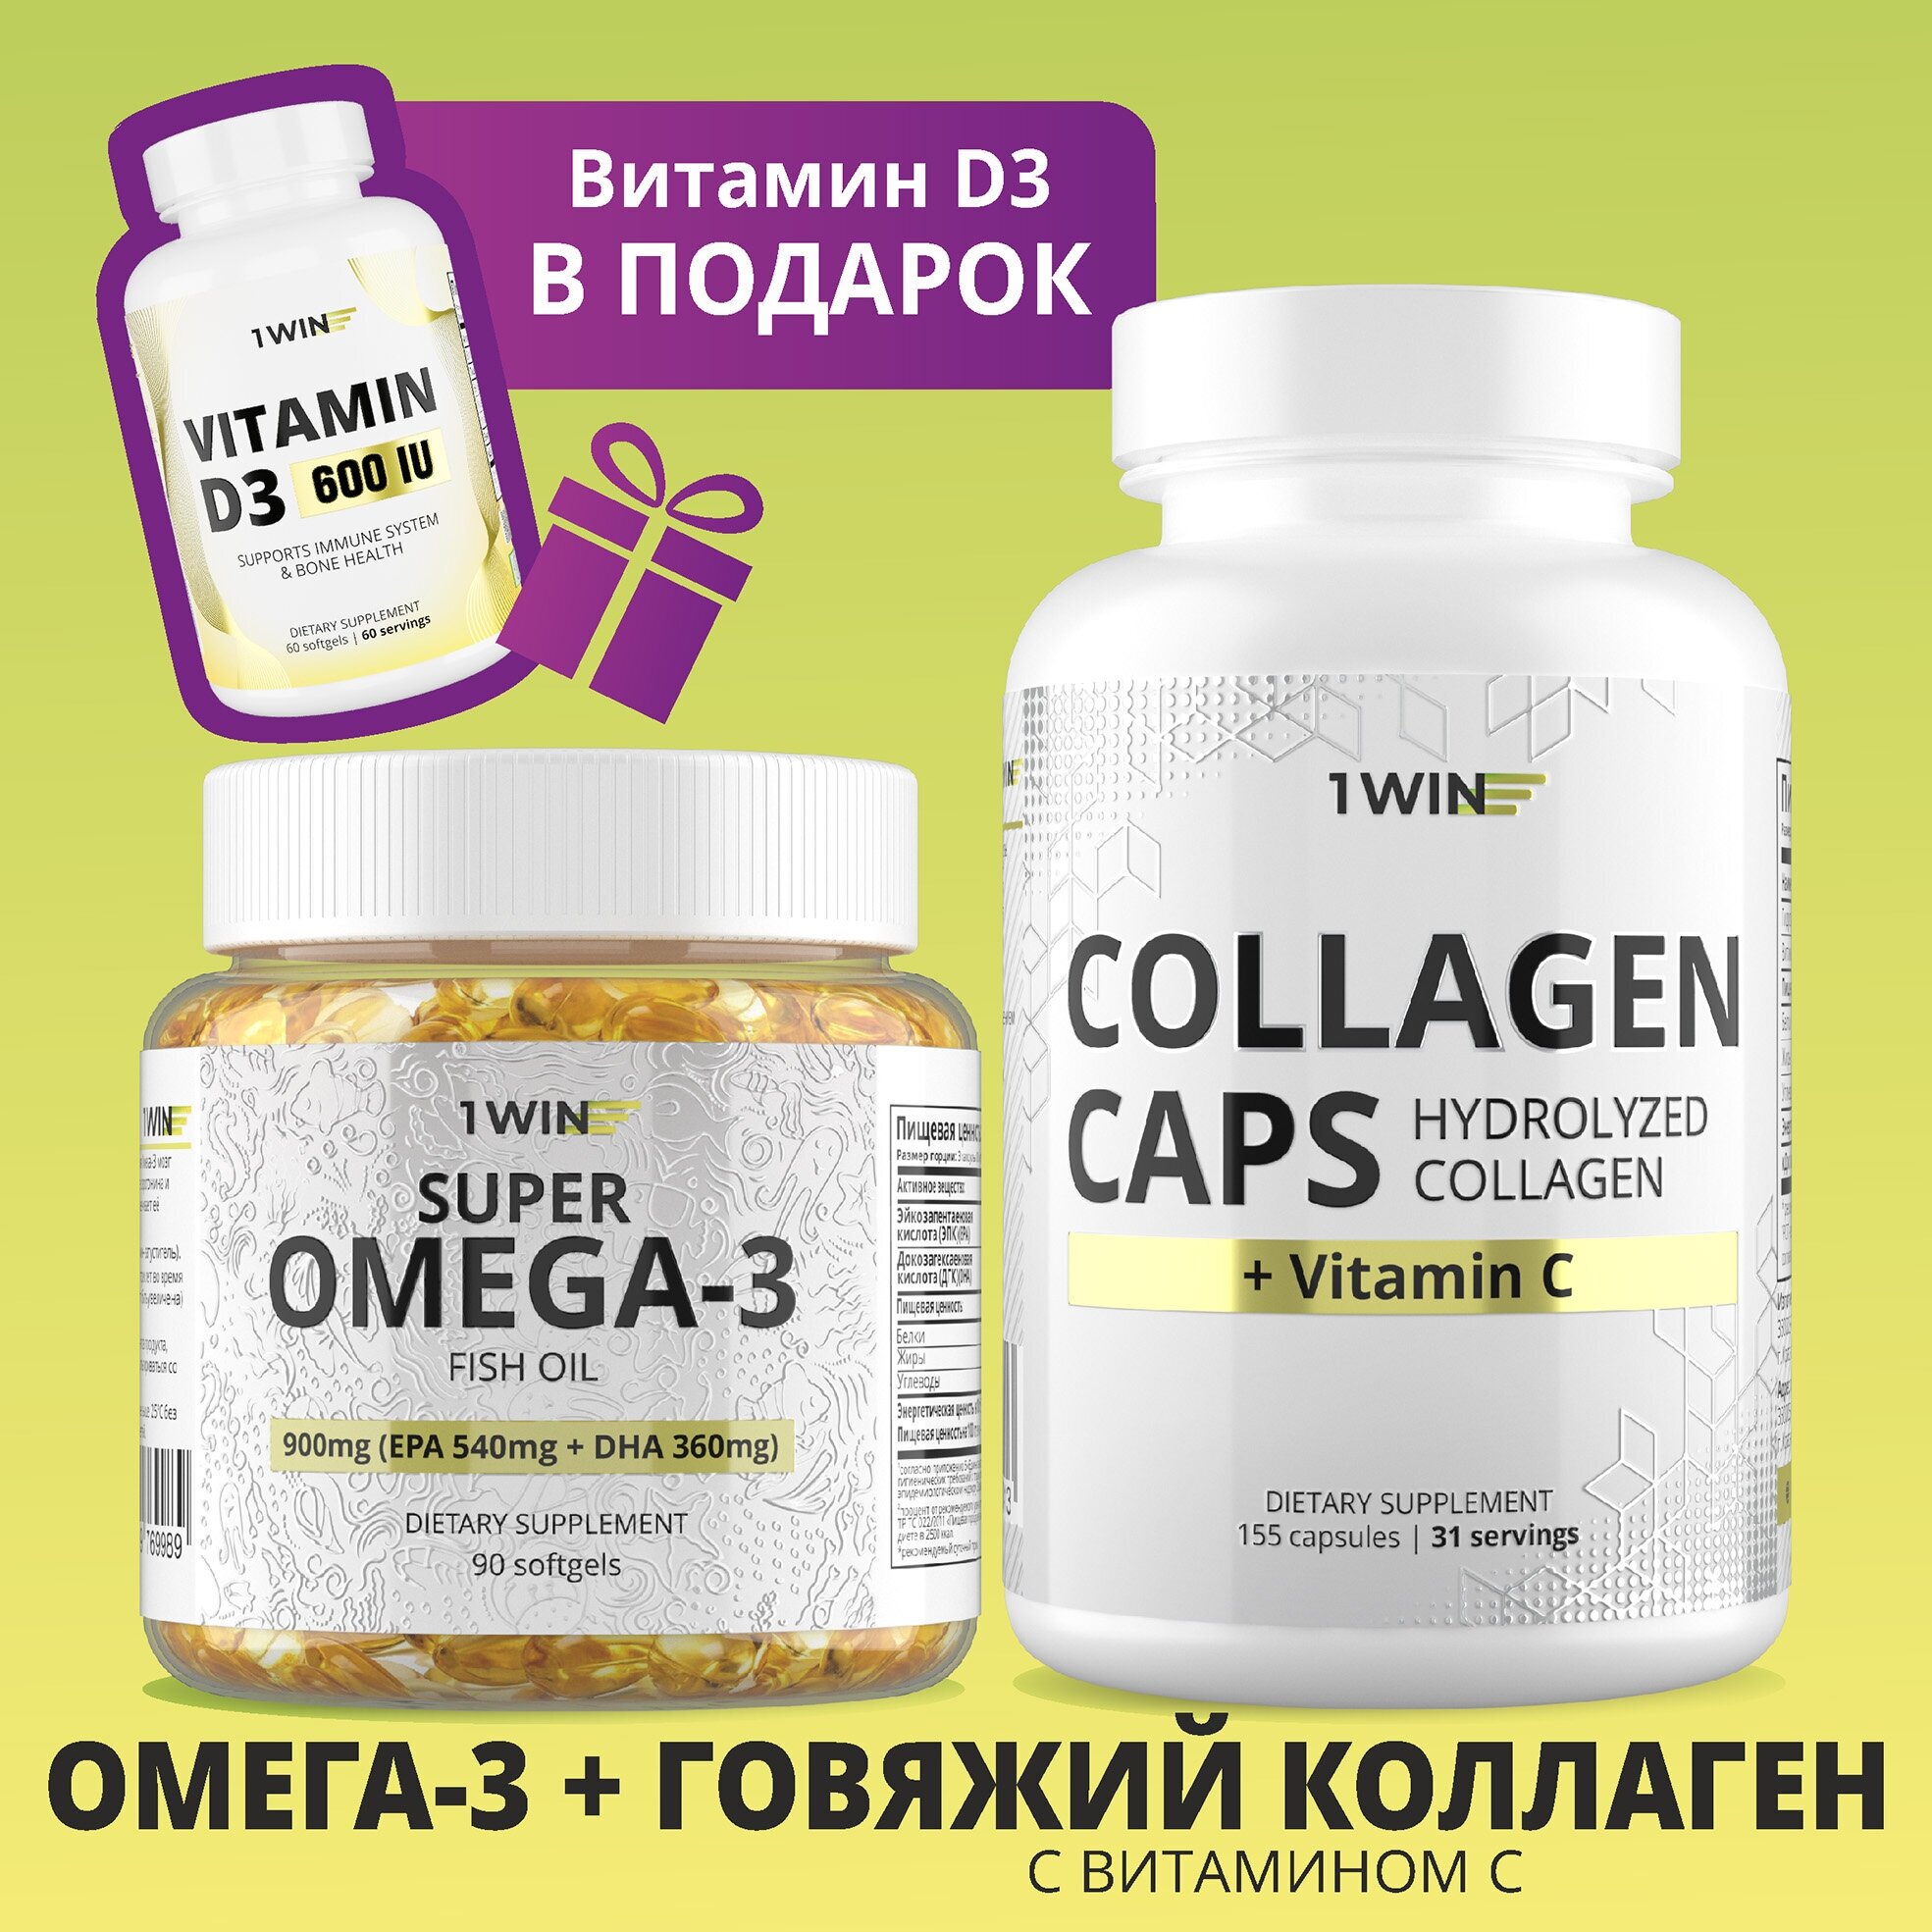 1WIN Комплекс витаминов Омега 3 и Коллаген с витамином С + Витамин D3 в подарок